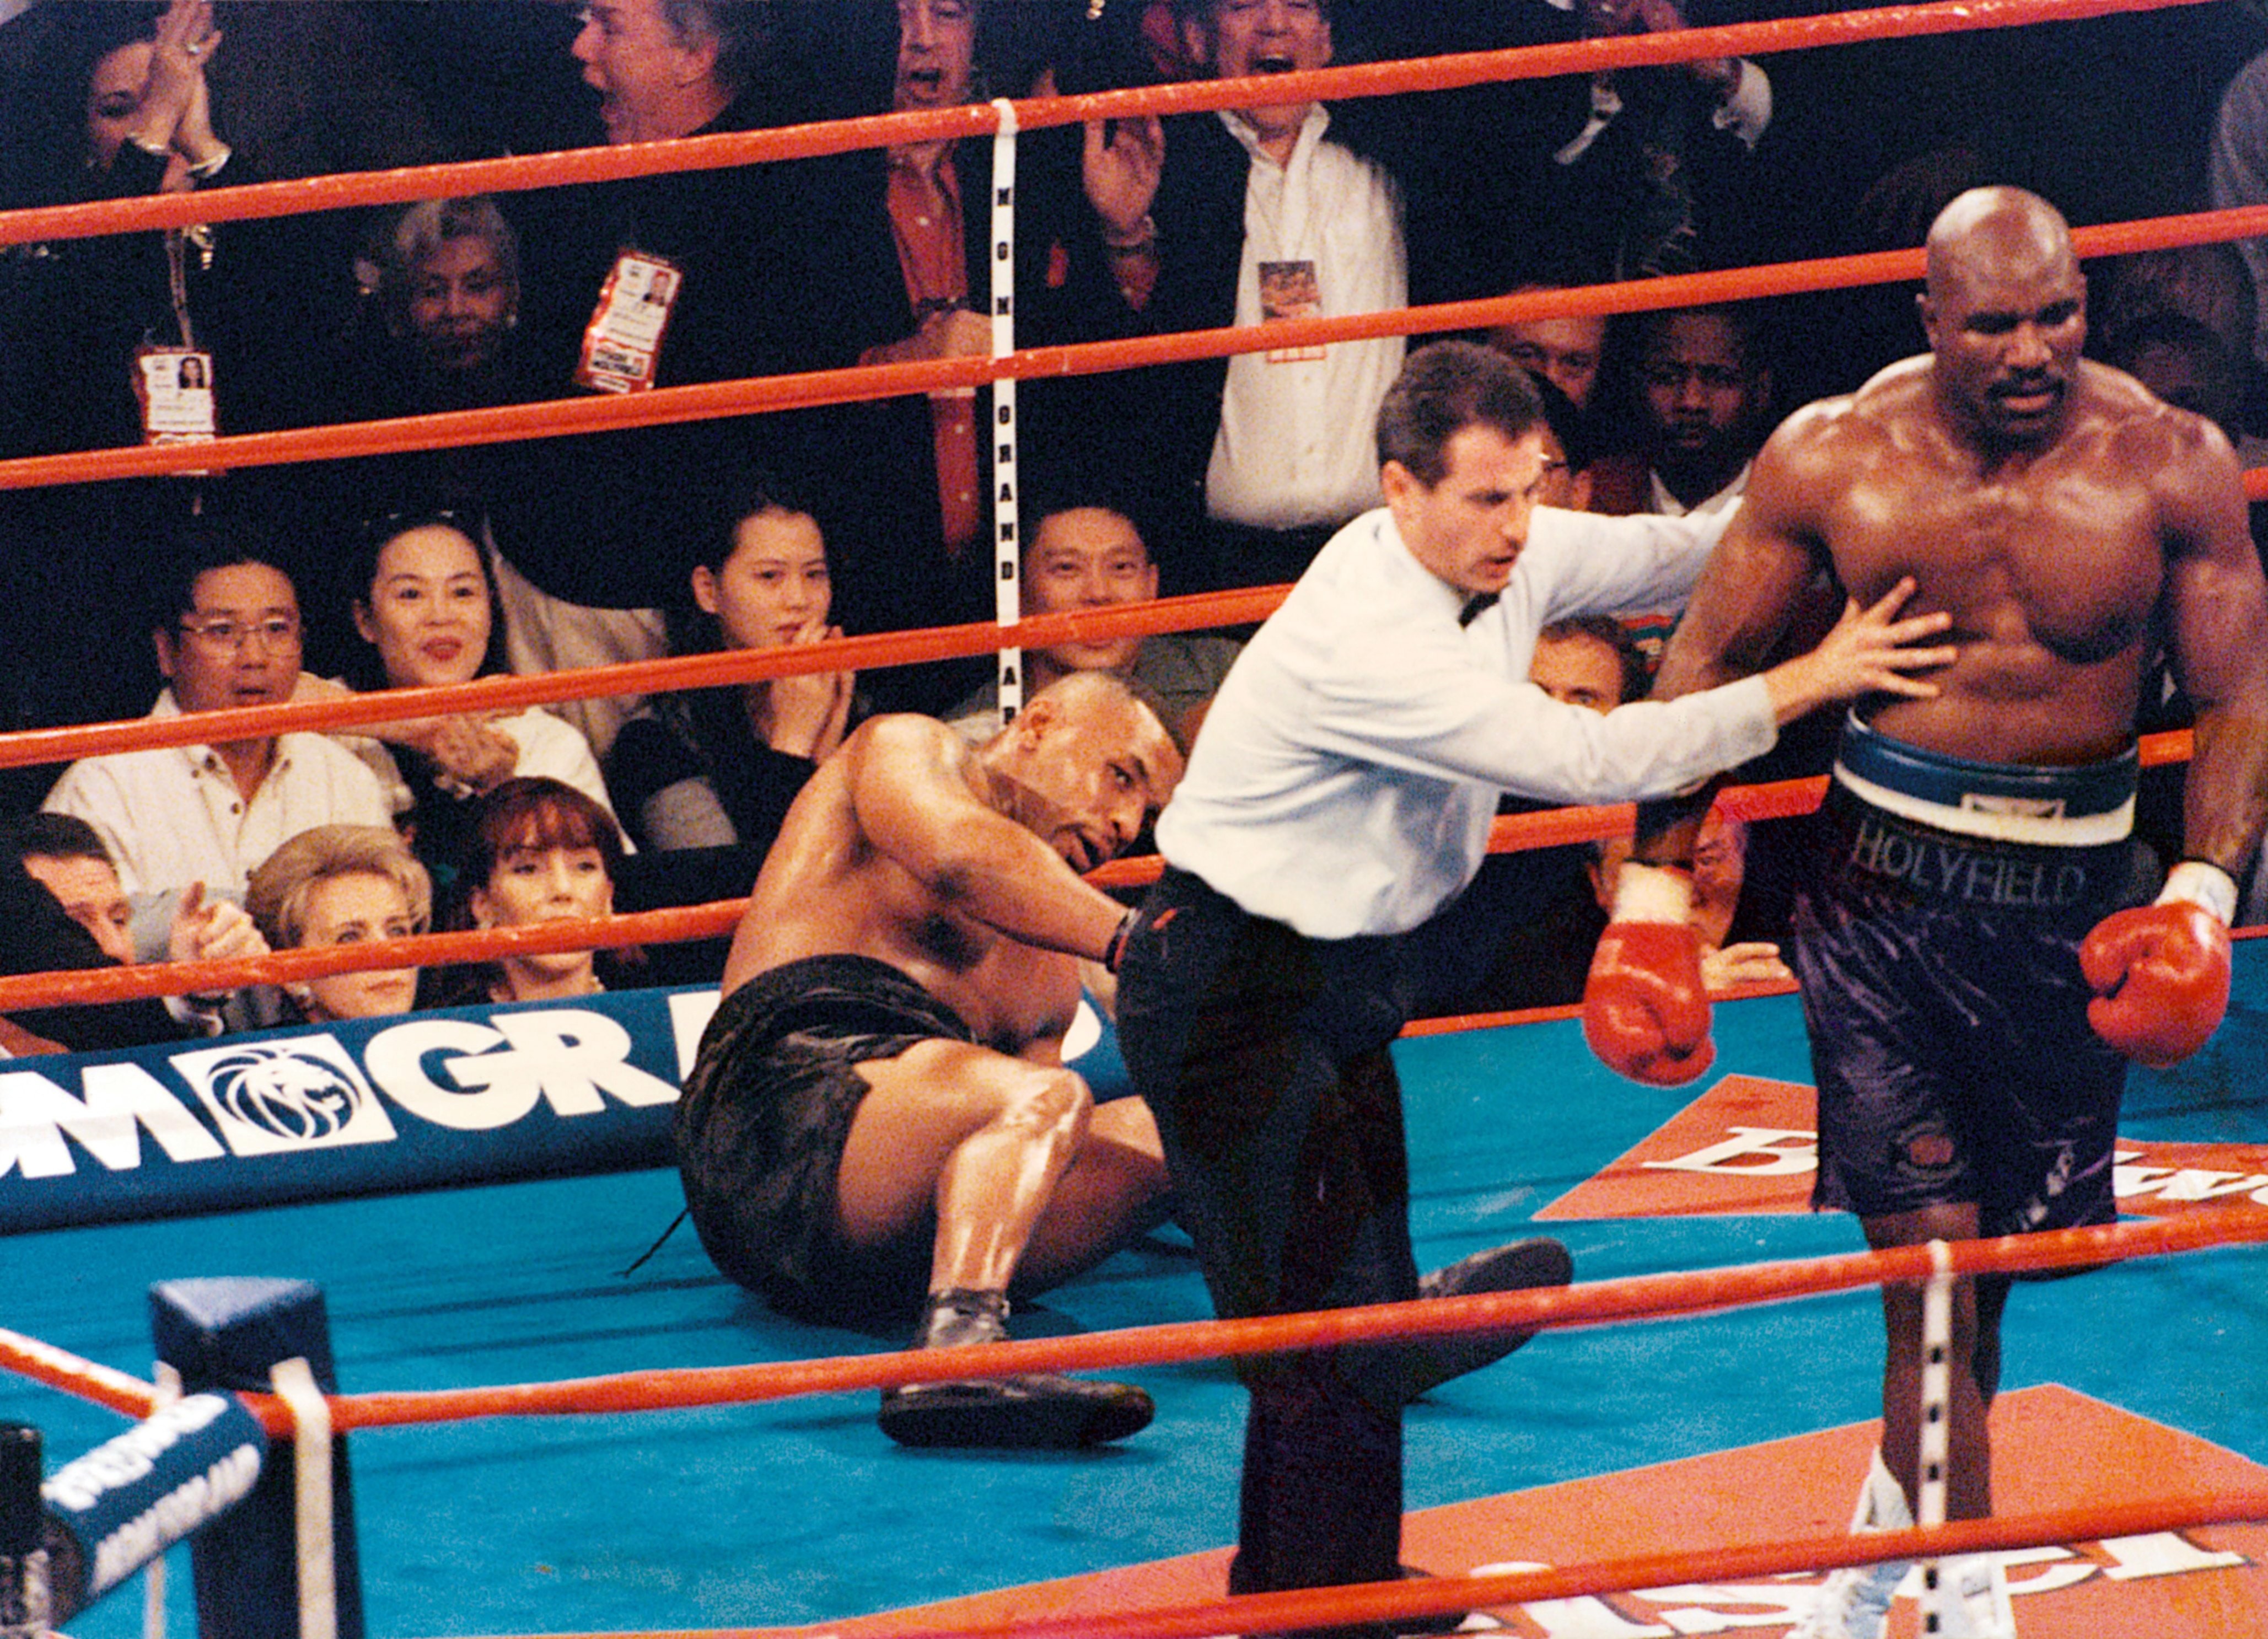 Treino Evander Holyfield Holyfield revela primeira luta com Tyson quando o rival tinha 17 anos -  Monet | Notícias